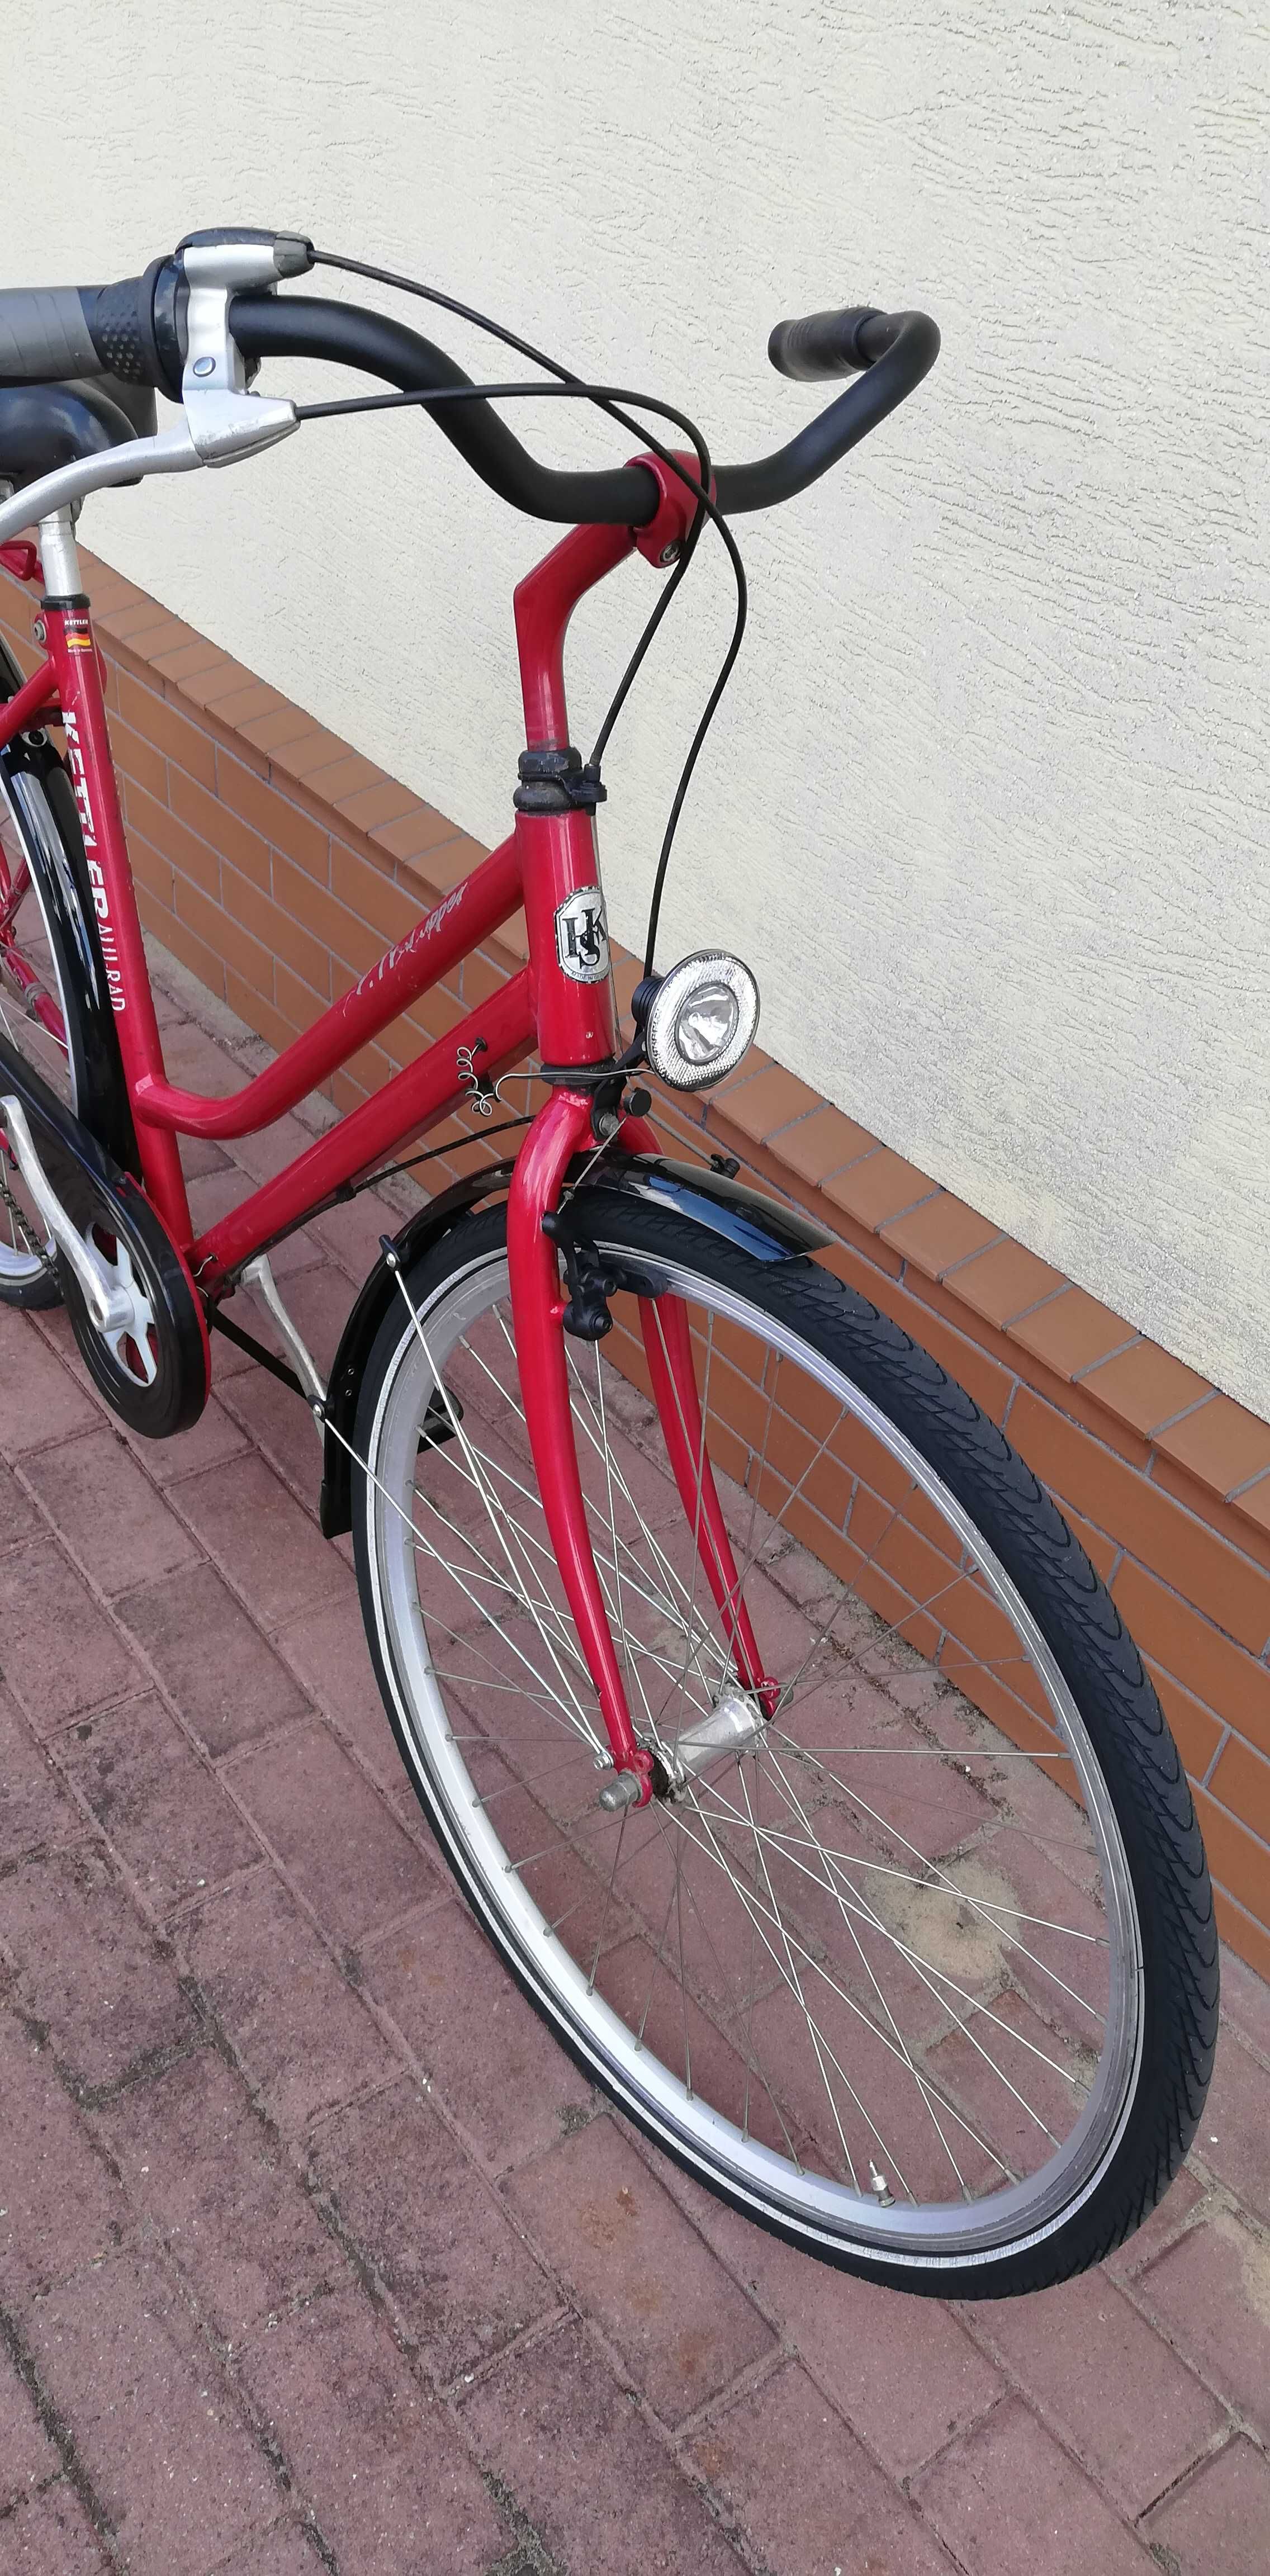 rower damka kettler aluminiowa czerwona niemiecka koła 28 miejska